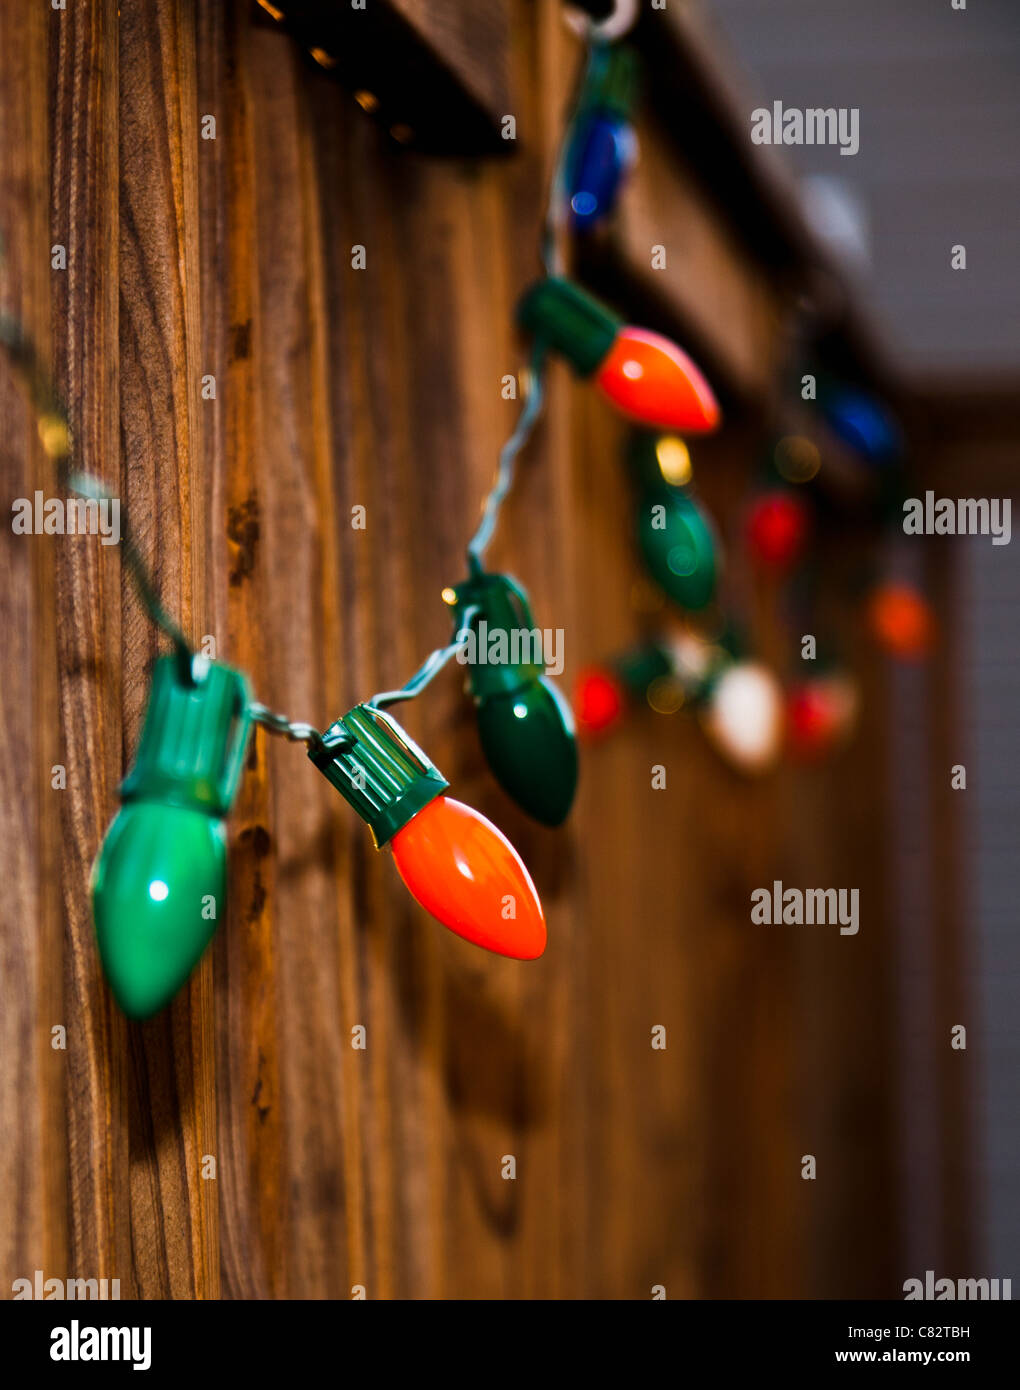 A row of Christmas lights Stock Photo